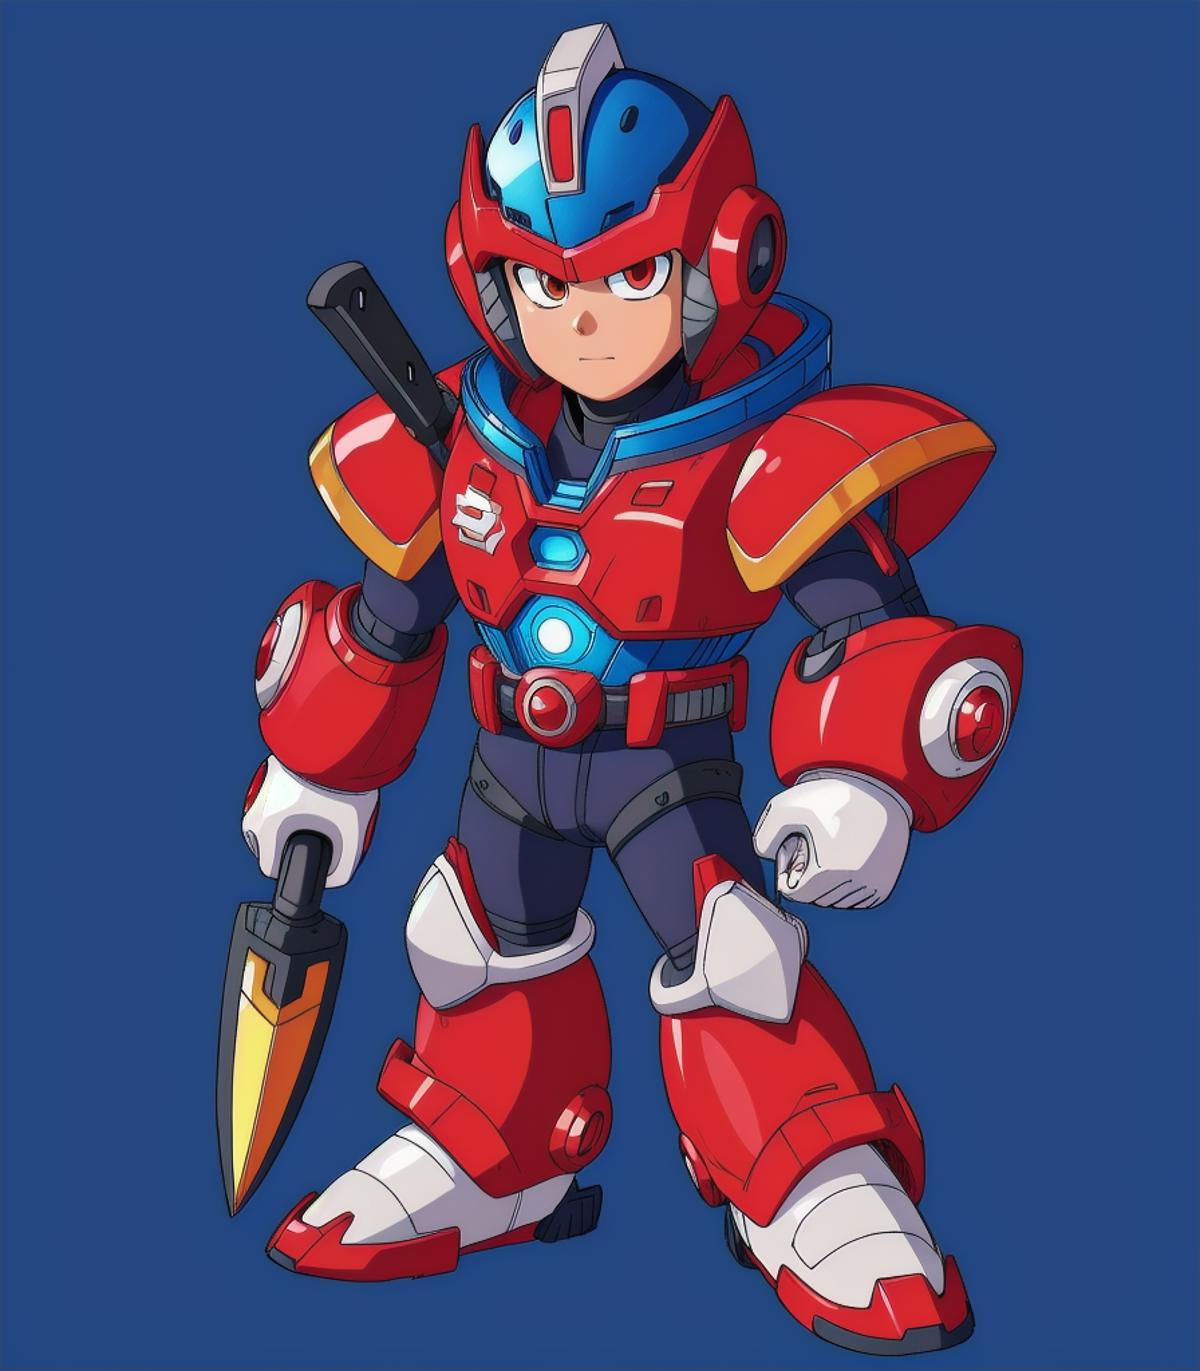 Mega Man Maverick Maker image by Menshiki